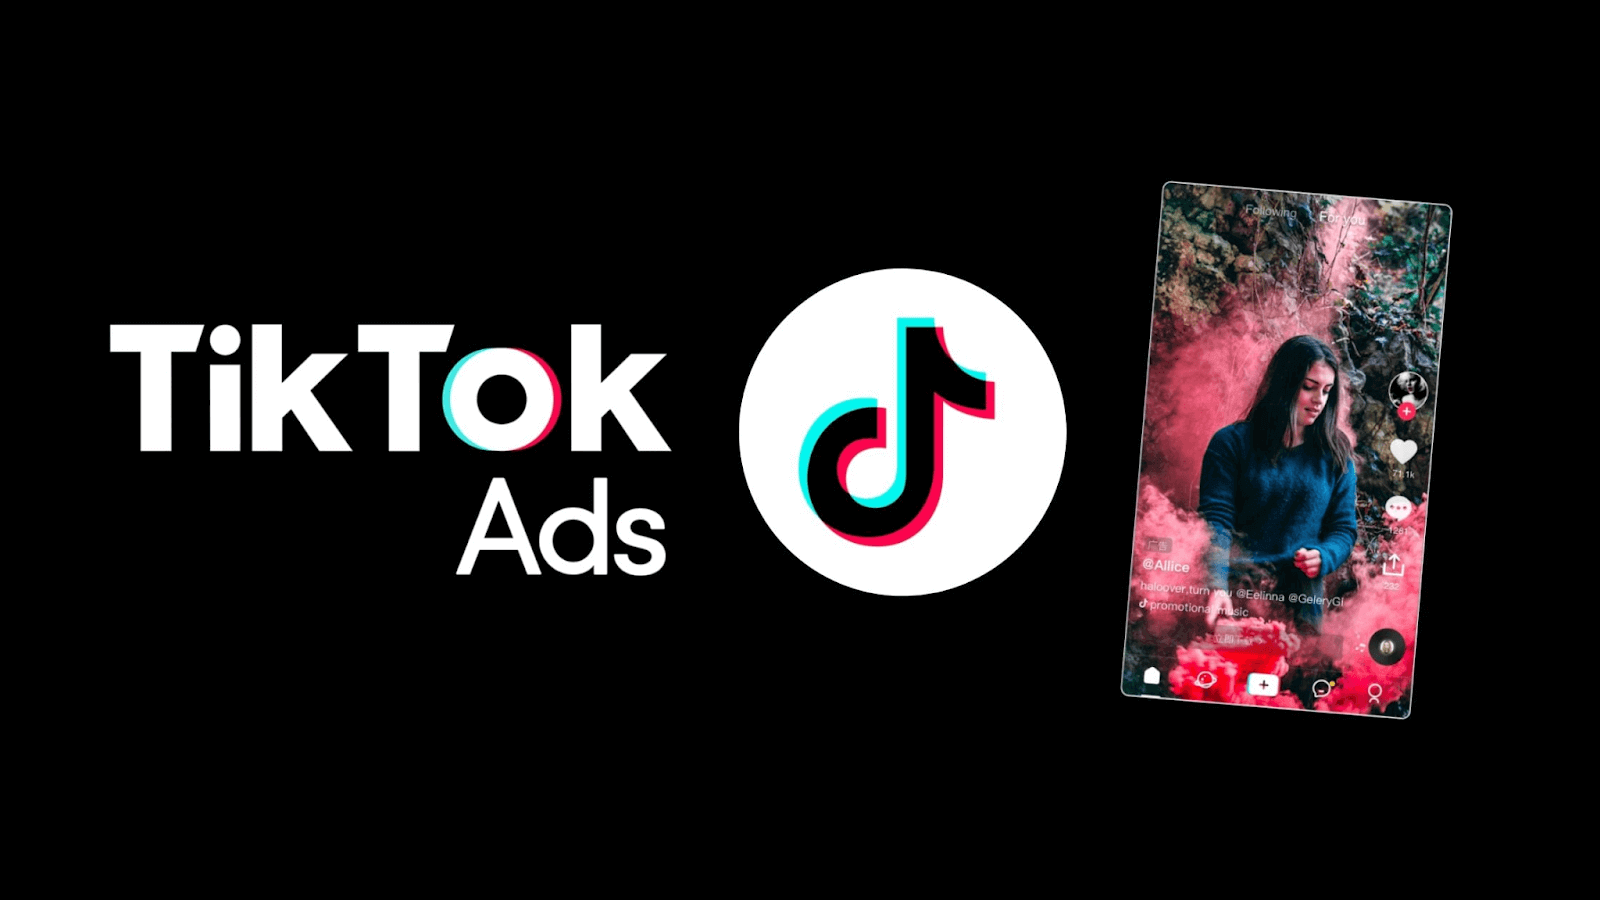  TikTok Ads cho phép người dùng quảng cáo sản phẩm của mình bằng video